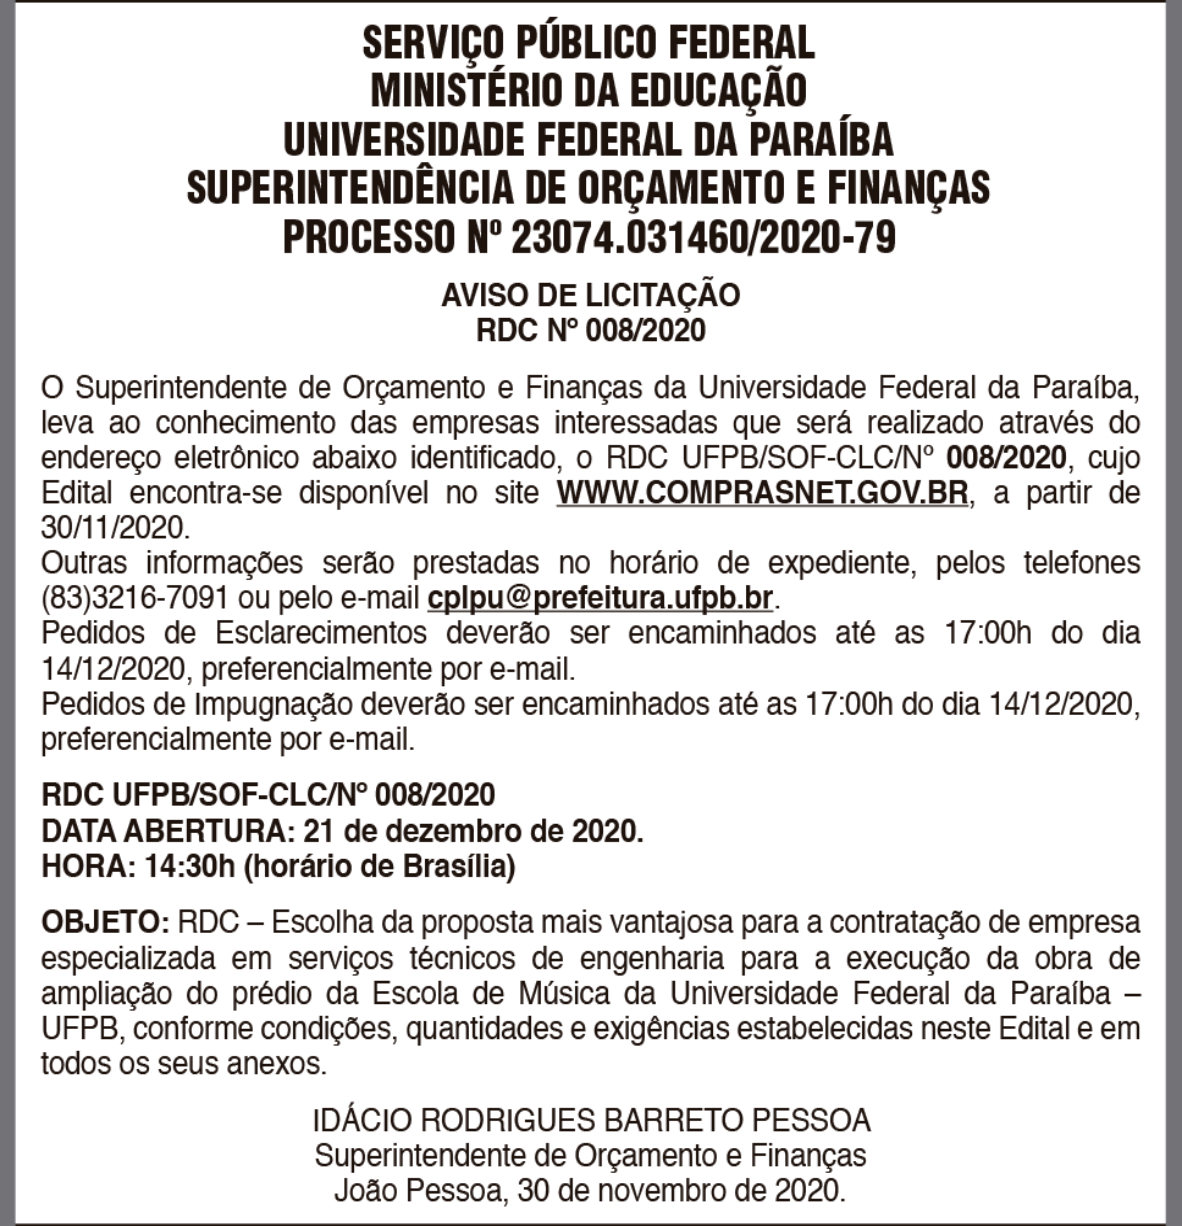 UFPB – PROCESSO Nº 23074.031460/2020-79 – AVISO DE LICITAÇÃO – RDC Nº 008/2020